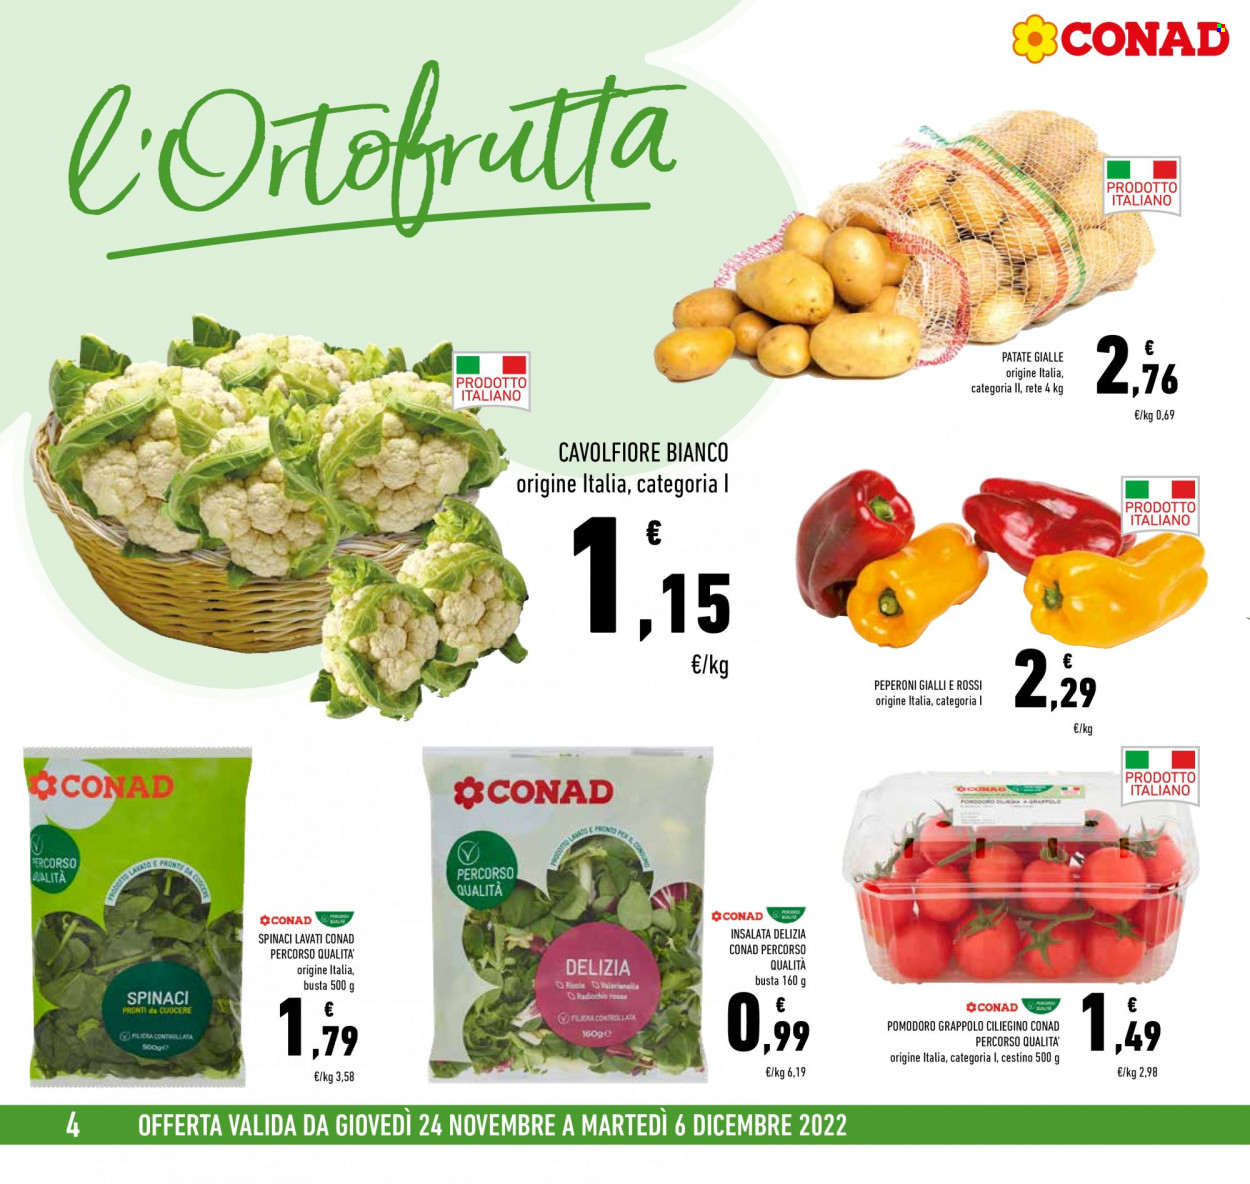 Volantino Conad - 24/11/2022 - 6/12/2022 - Prodotti in offerta - patate, cavolfiore, spinaci, peperoni, pomodori, patate gialle. Pagina 4.